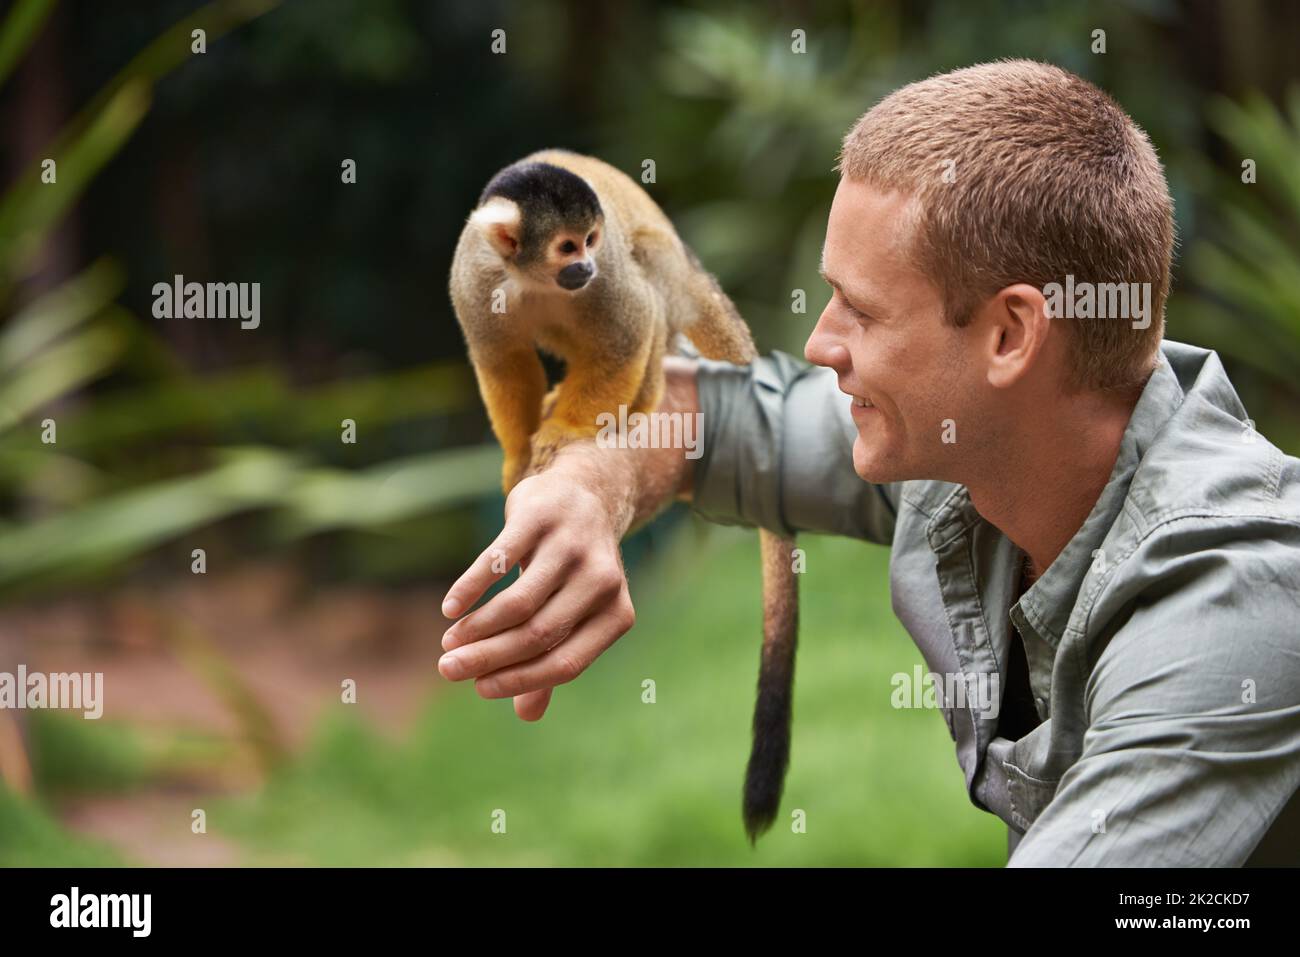 Hallo, kleiner Kerl. Aufnahme eines jungen Mannes, der in einem Wildpark mit einem kleinen Affen interagiert. Stockfoto